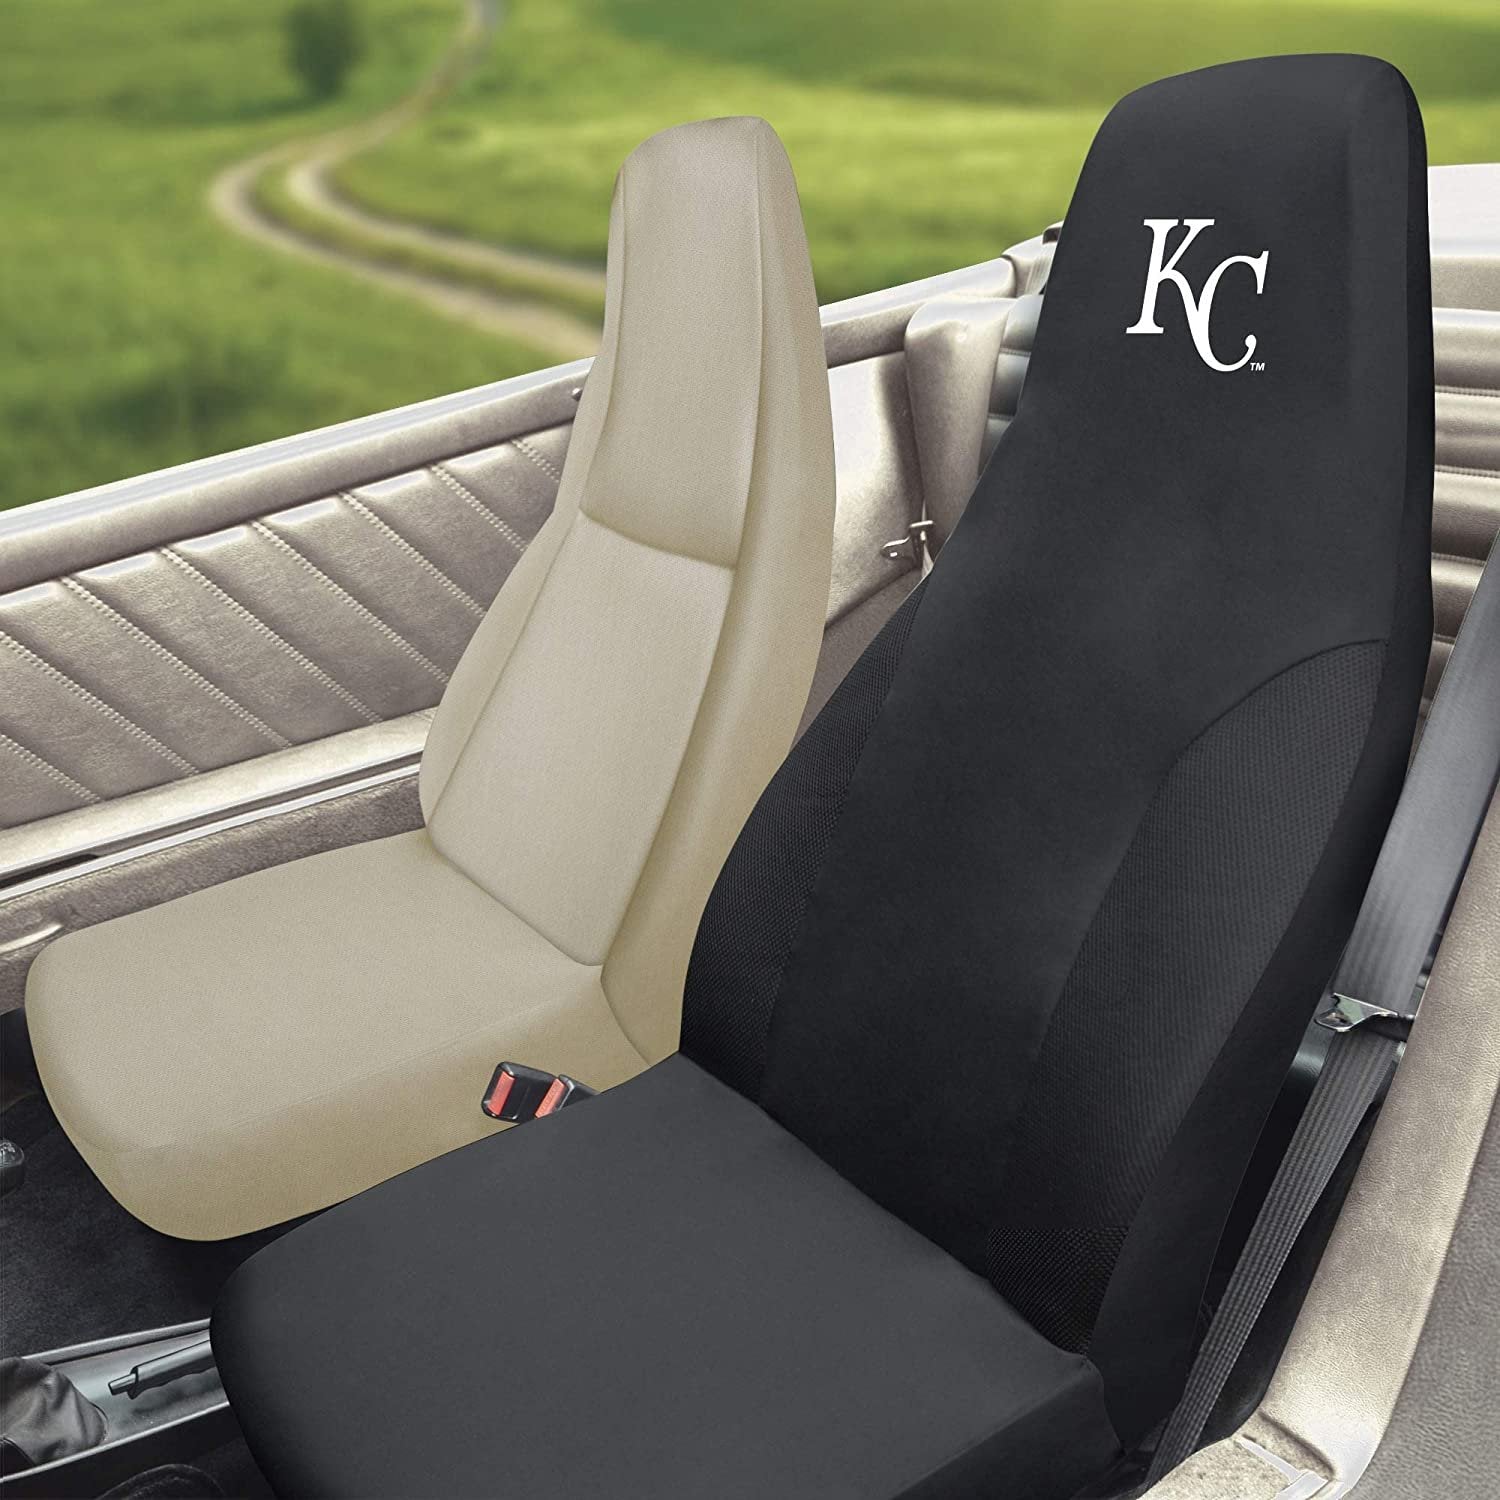 FANMATS 27061 MLB - Kansas City Royals Seat Cover